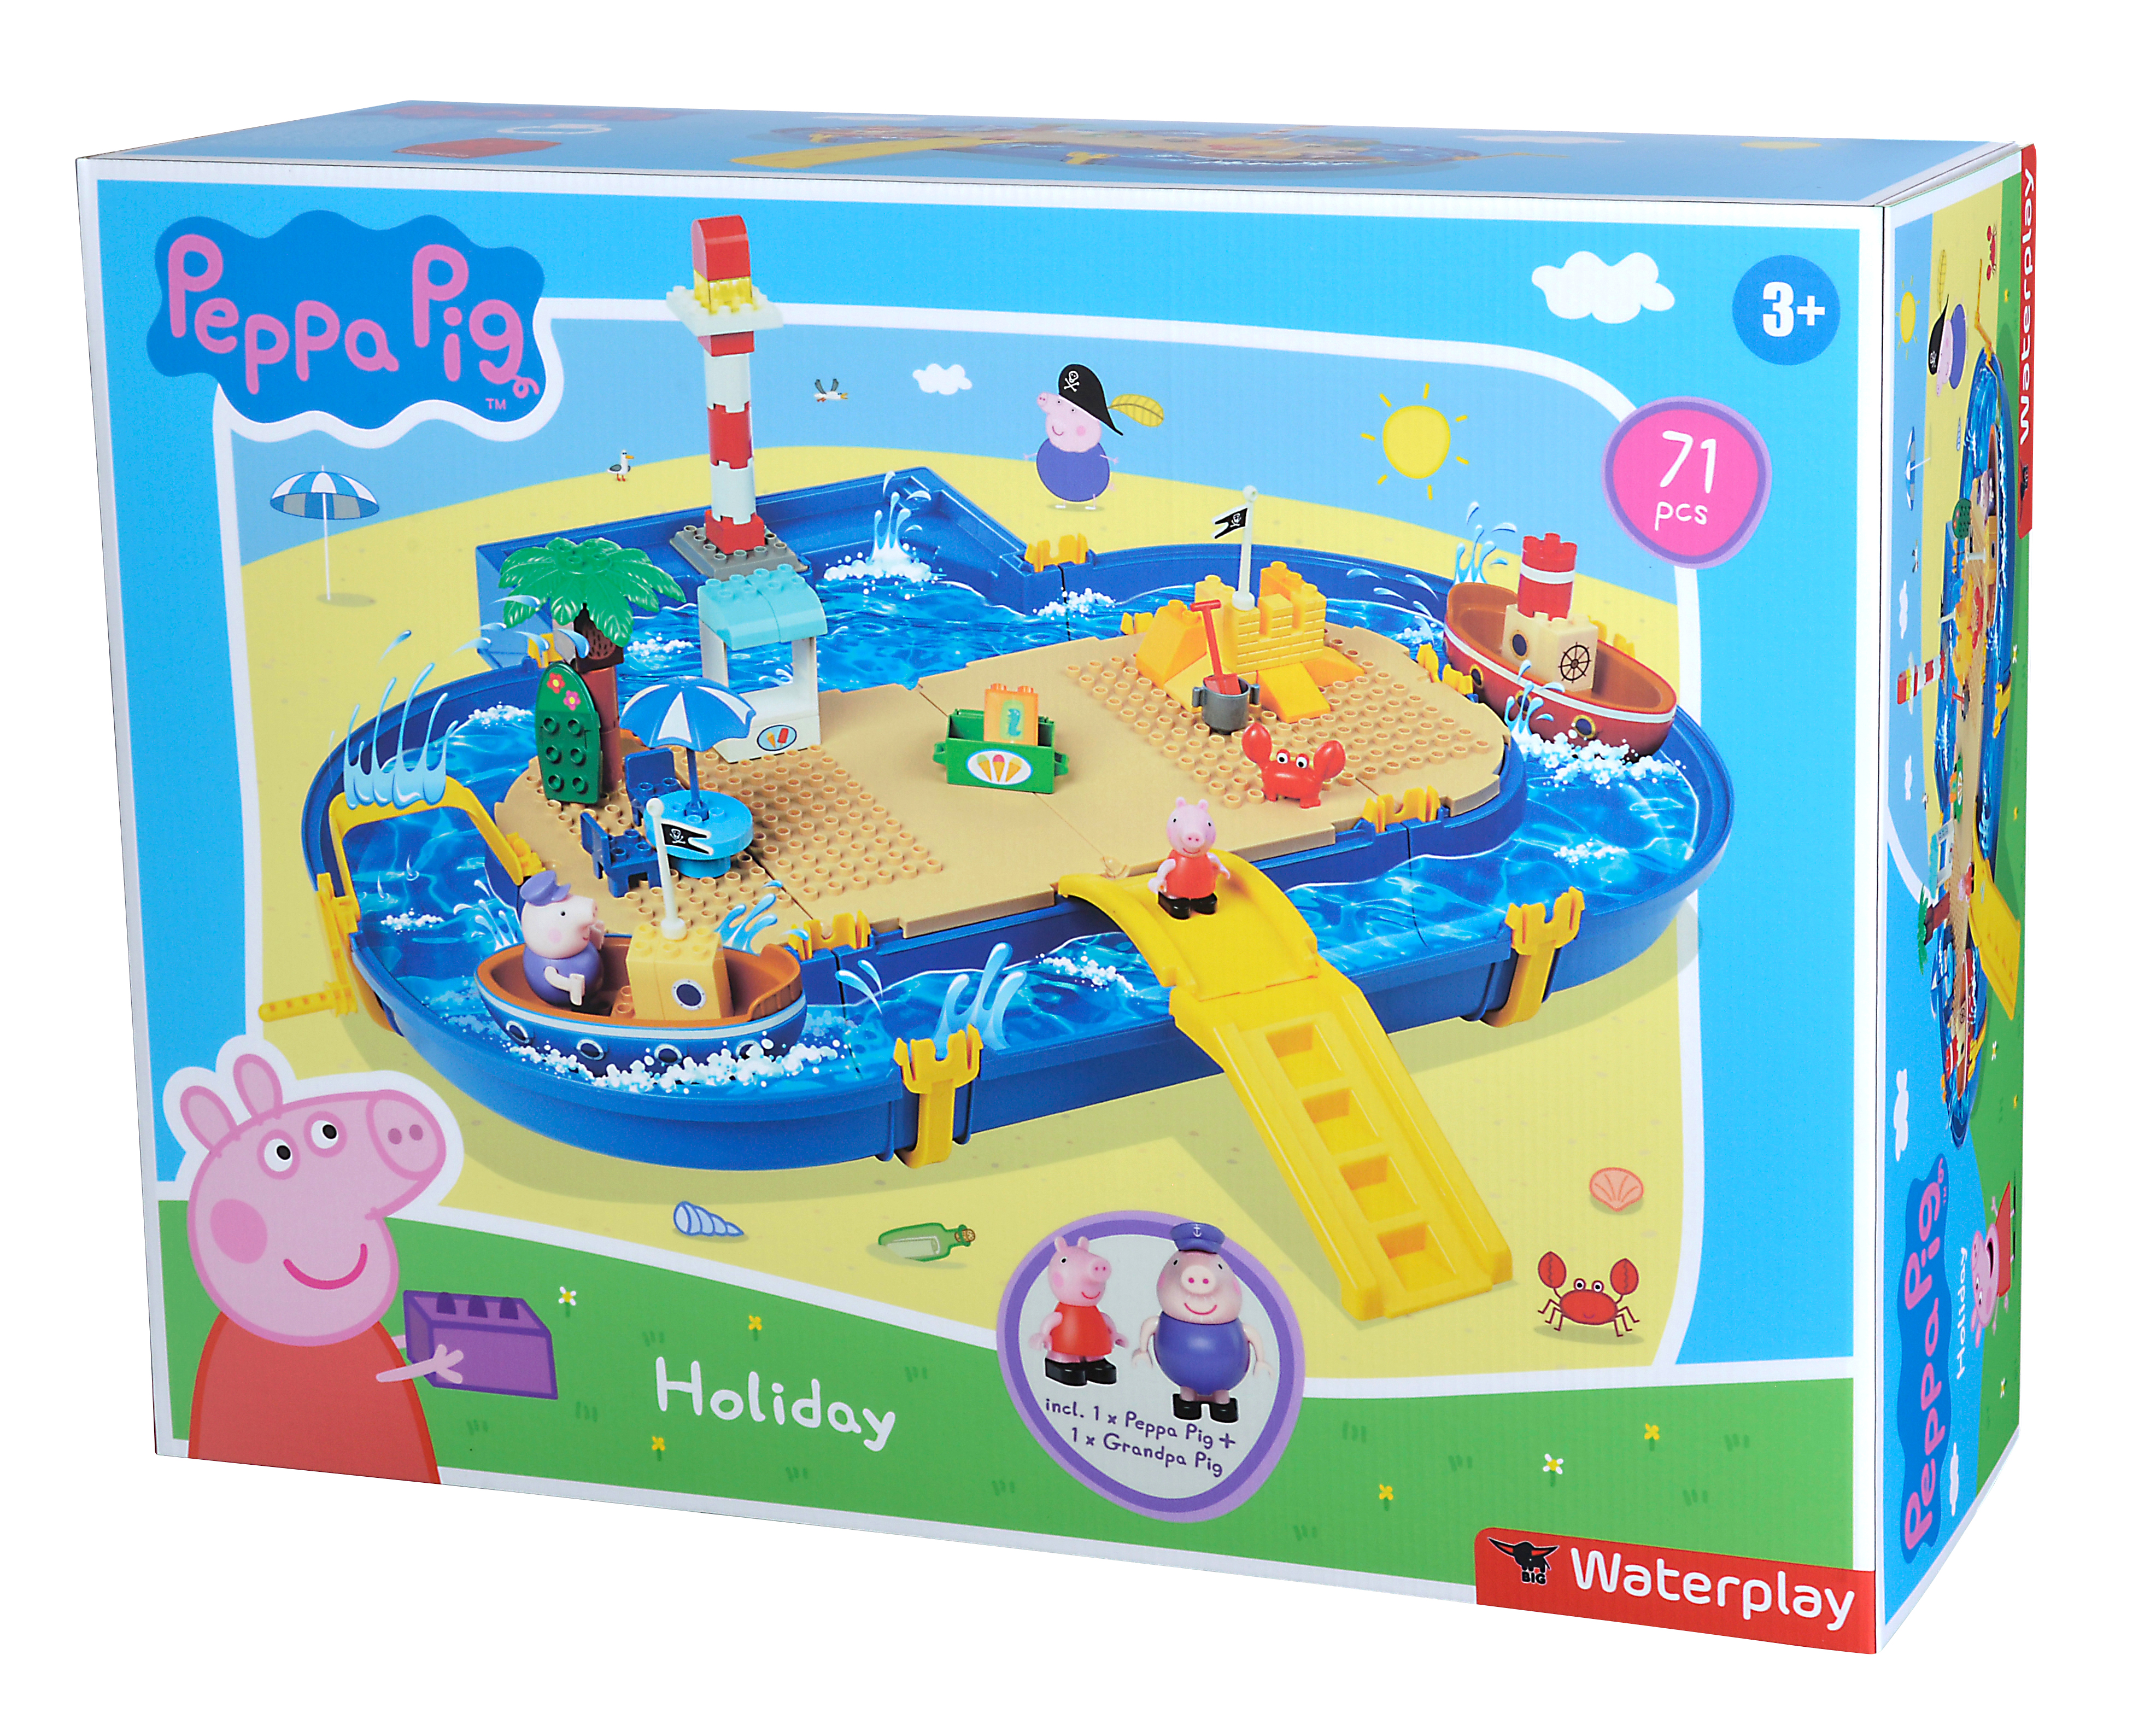 BIG Waterplay Peppa Pig Holiday Blau Wasserspielset